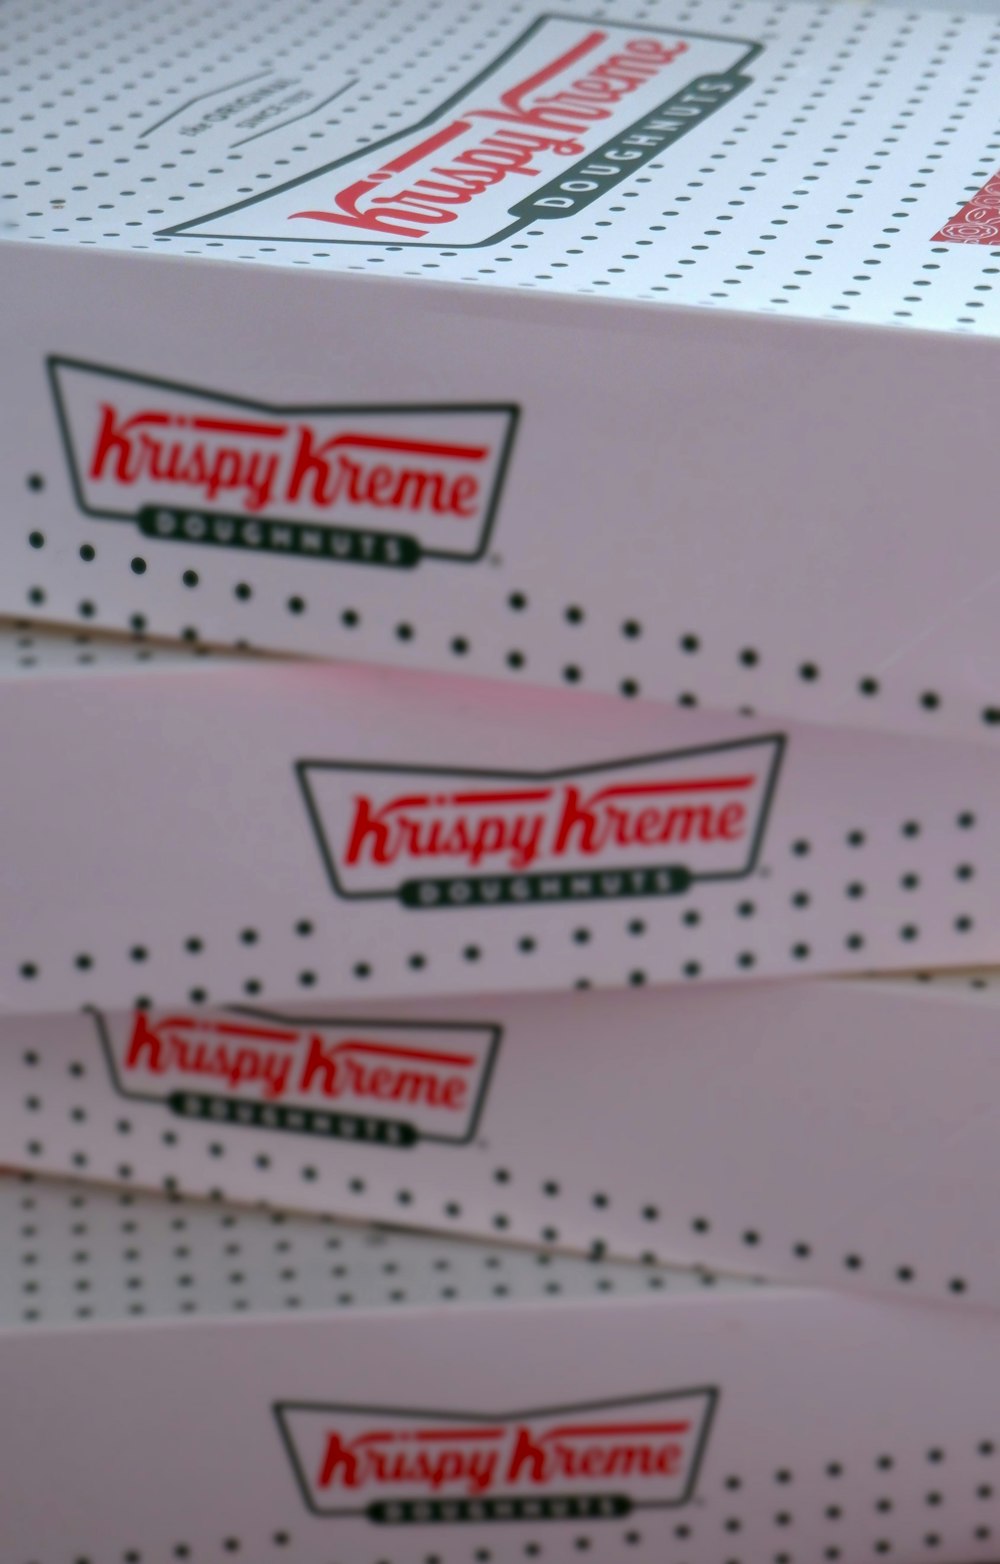 Tres cajas de Krispy Kreme están apiladas una encima de la otra